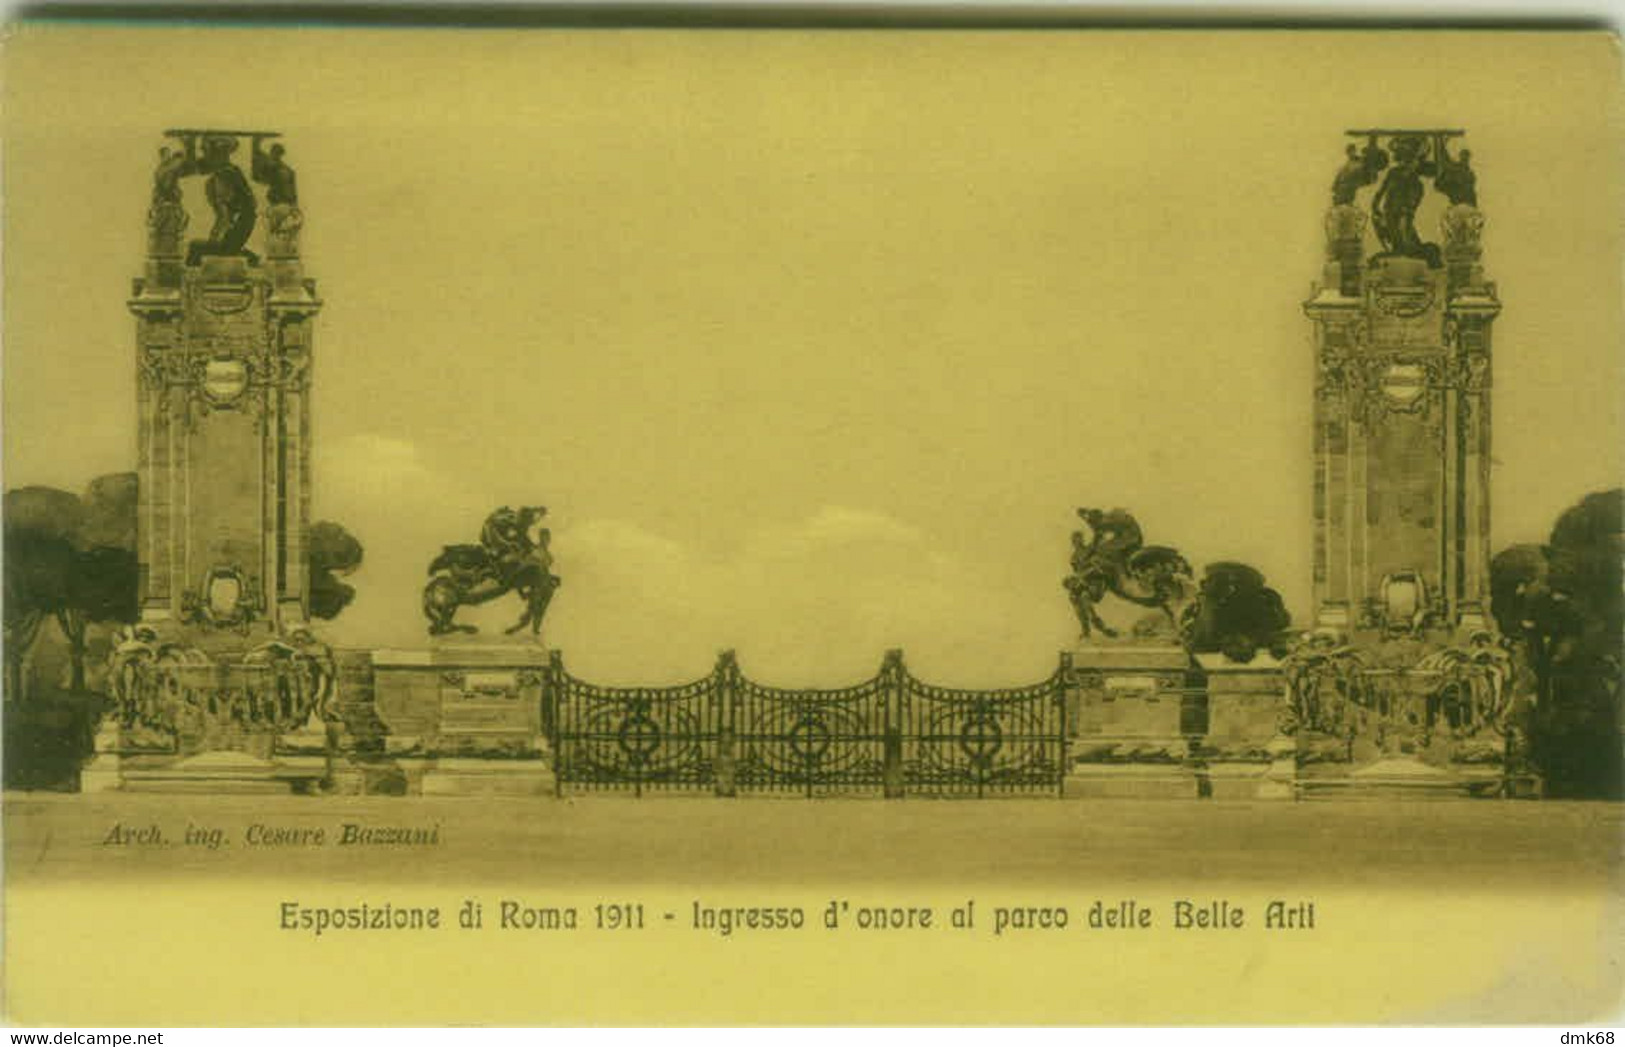 ROMA - ESPOSIZIONE DEL 1911 - INGRESSO D'ONORE AL PARCO DELLE BELLE ARTI - EDIZIONE ALTEROCCA (6909) - Mostre, Esposizioni